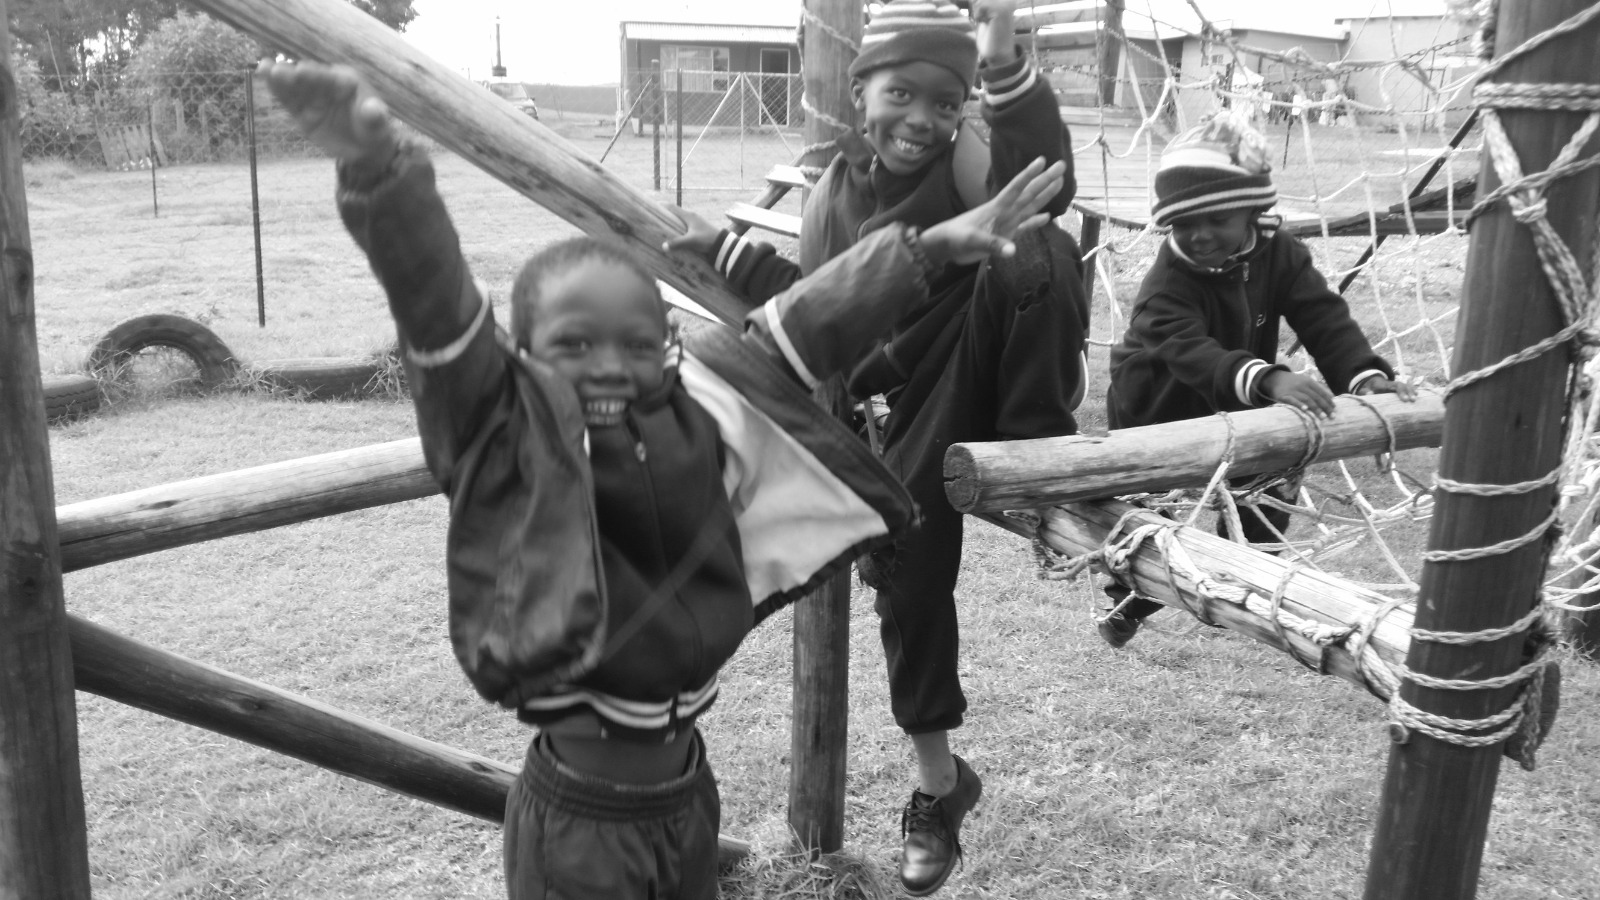 Imagem: Autoria do autor, escola do Distrito de Lubombo, região localizada em Eswatini, país da África, anteriormente conhecido como Suazilância.